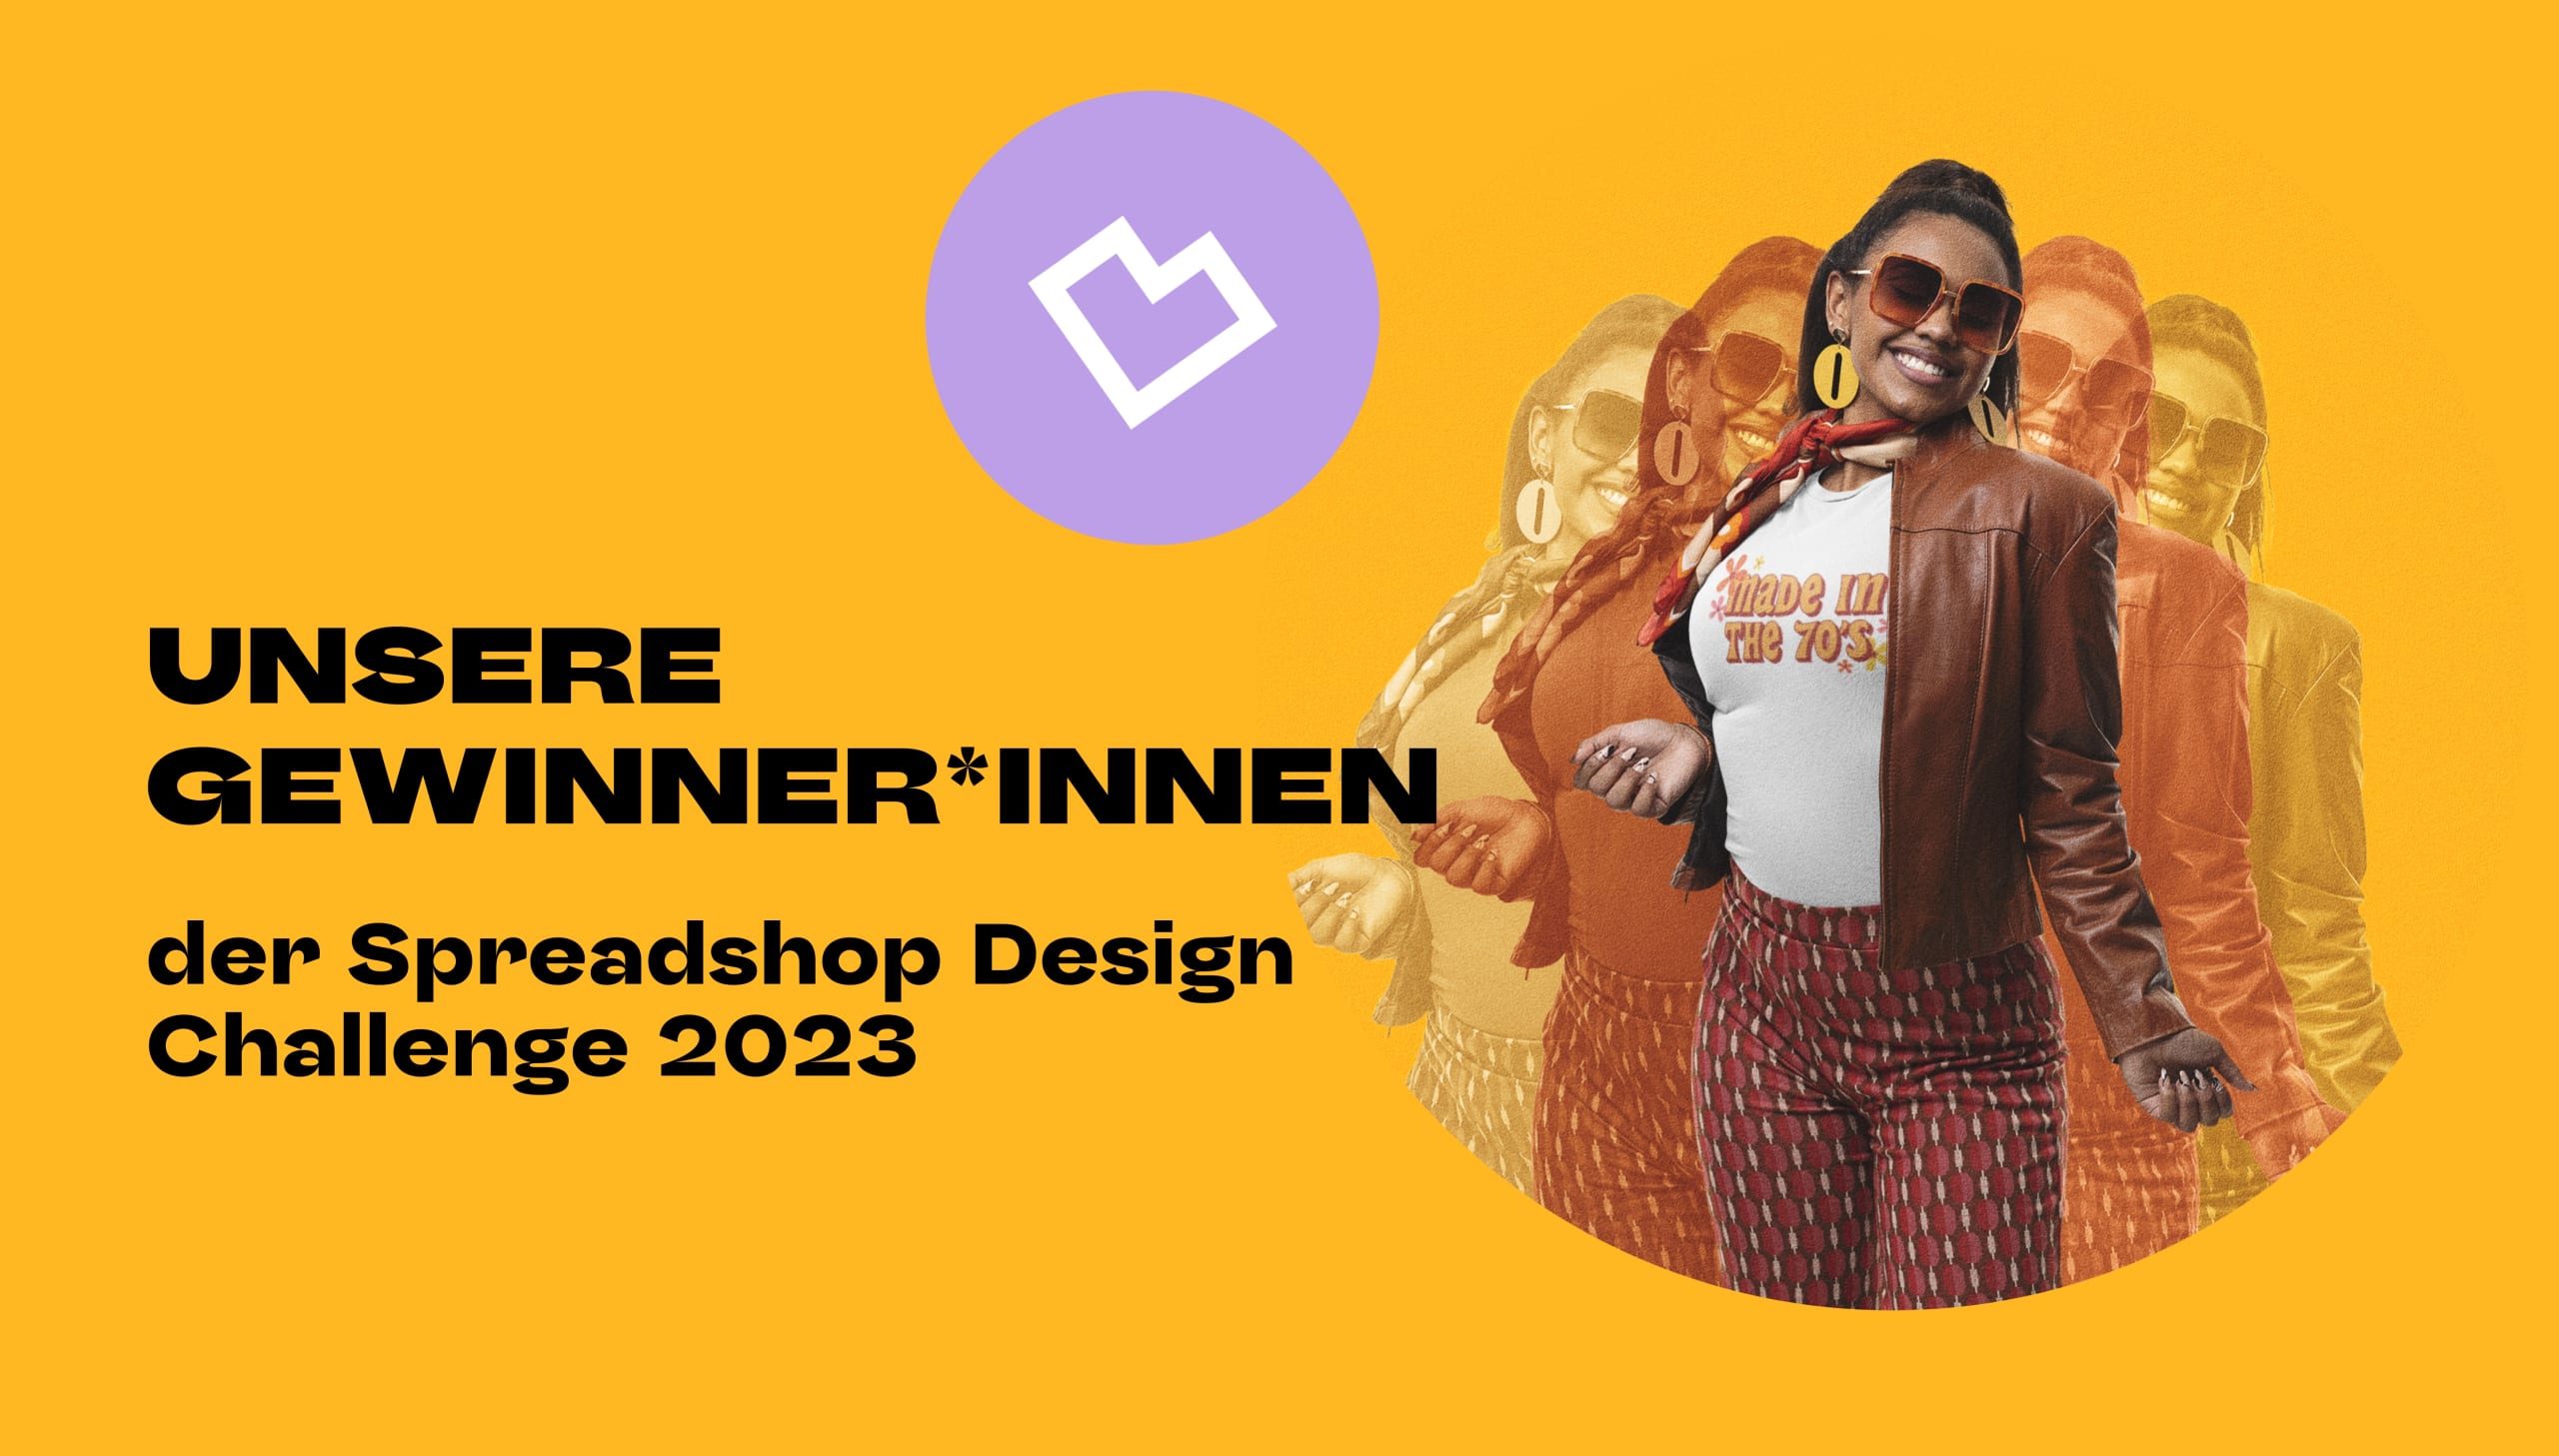 Ihr seid großartig! – Die Gewinner*innen der Spreadshop Design Challenge 2023